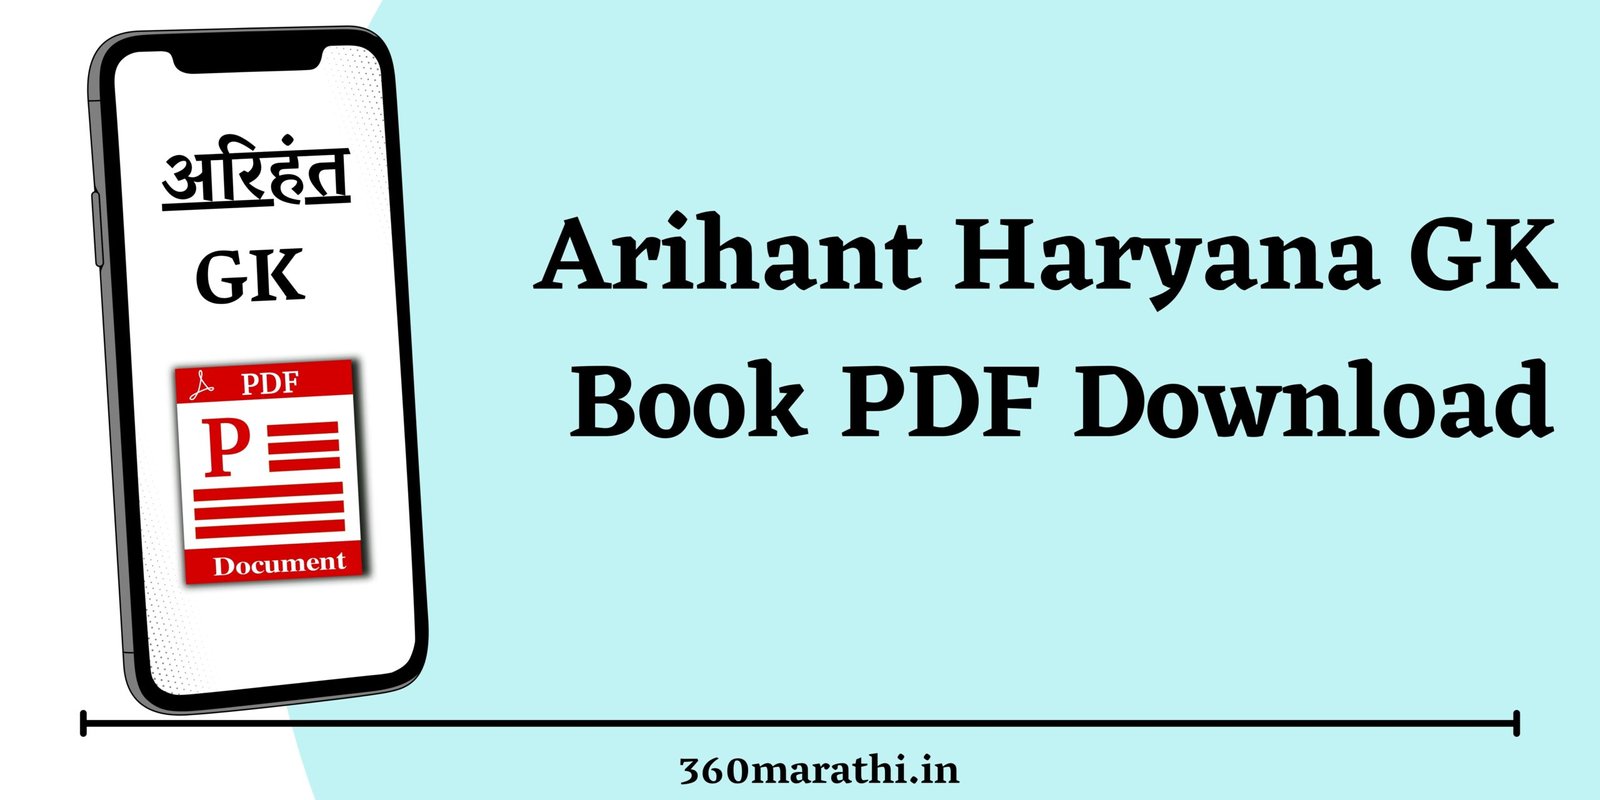 Arihant Haryana GK Book PDF Download